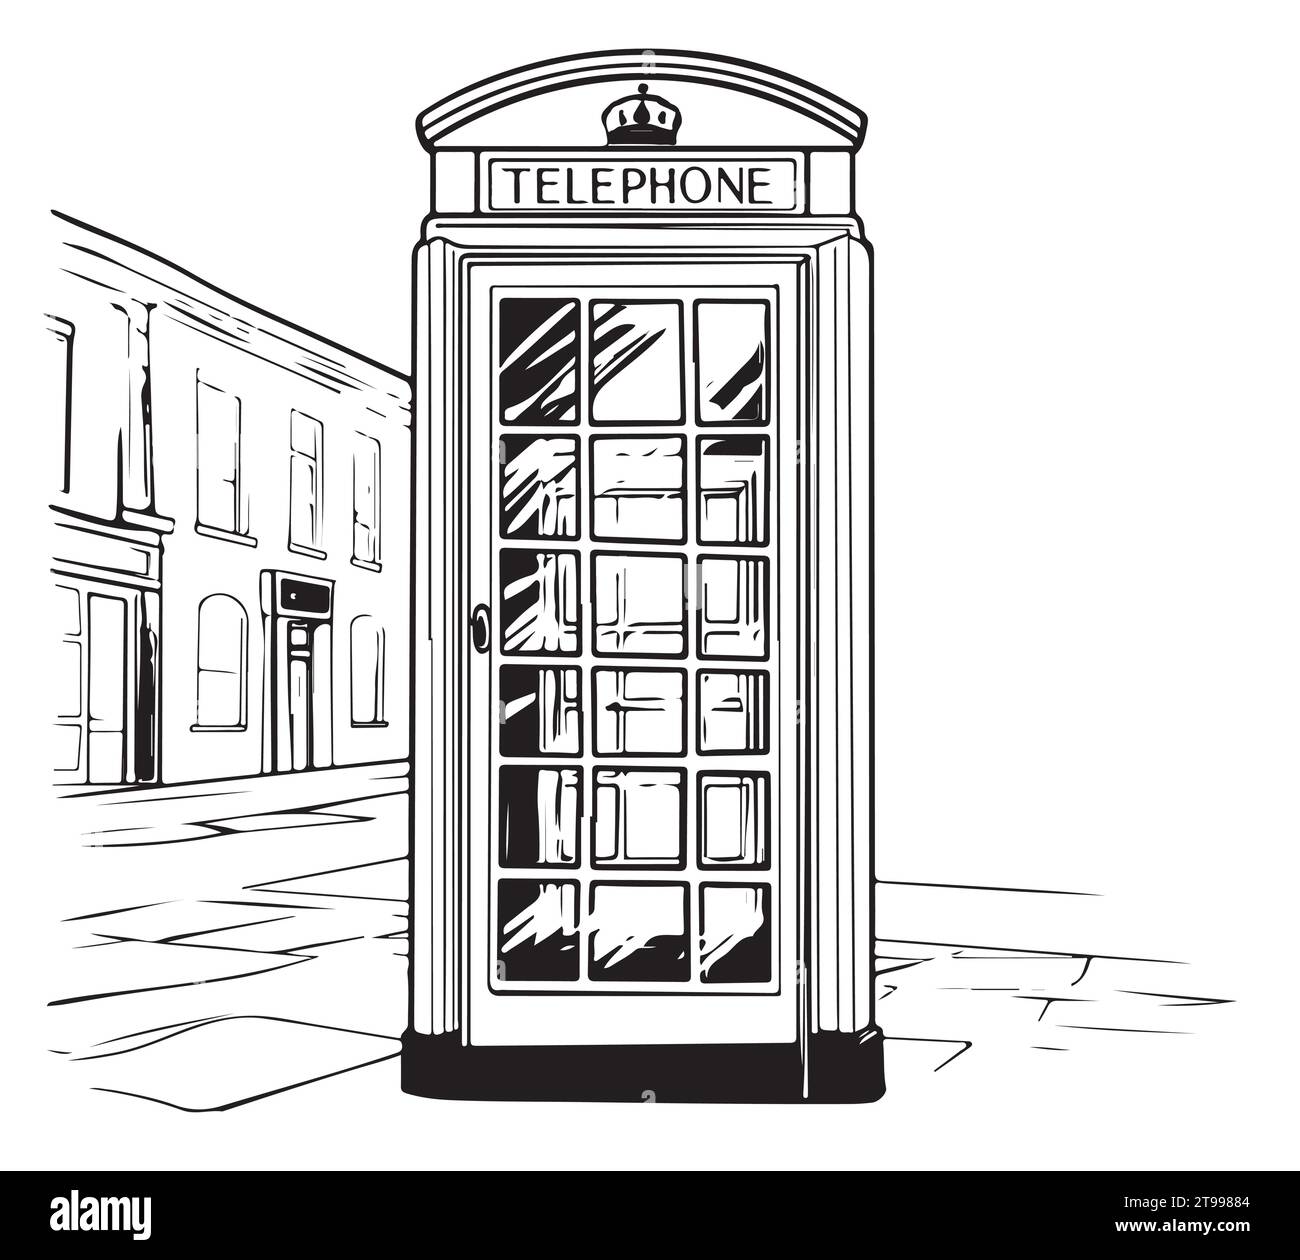 Téléphone public londonien. Illustration de croquis dessinée à la main isolée sur fond blanc Illustration de Vecteur